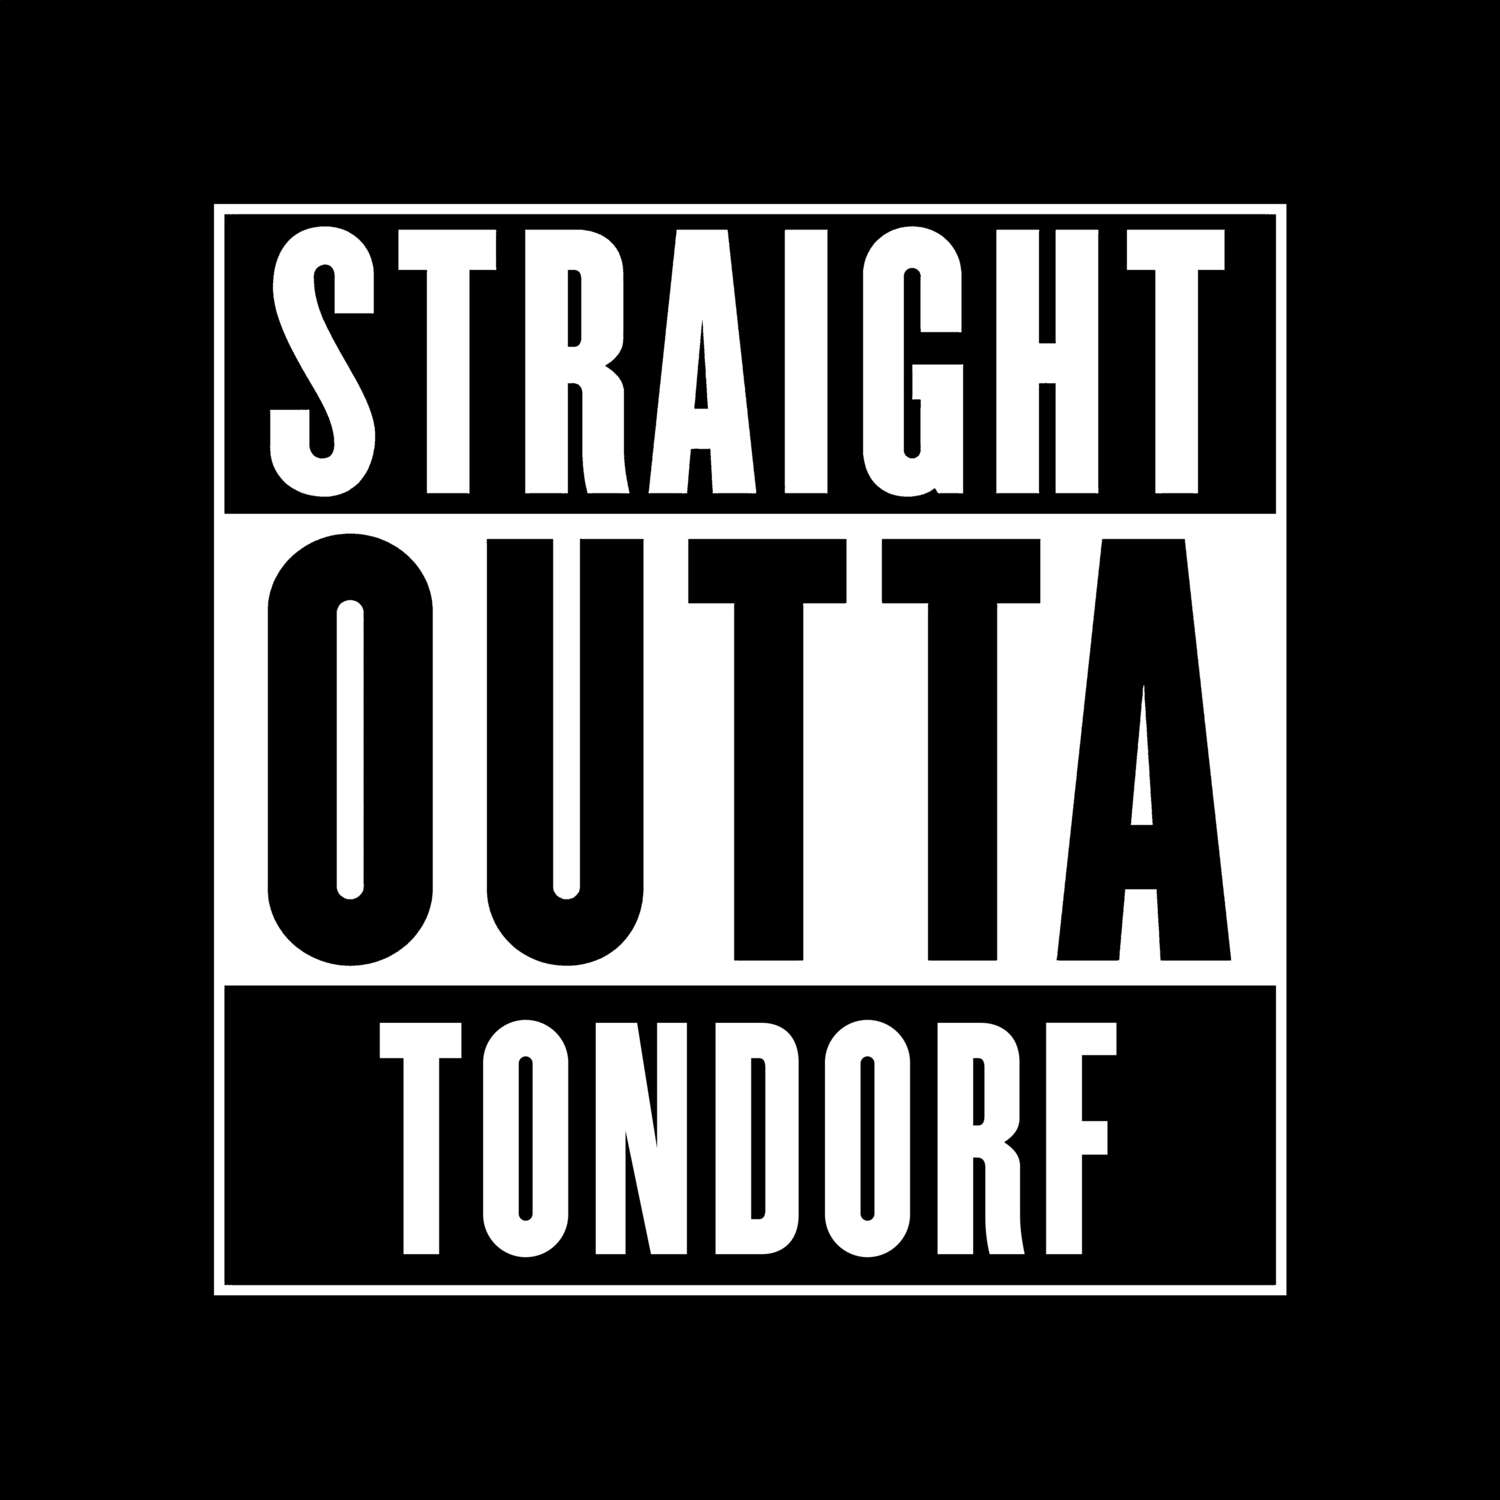 Tondorf T-Shirt »Straight Outta«